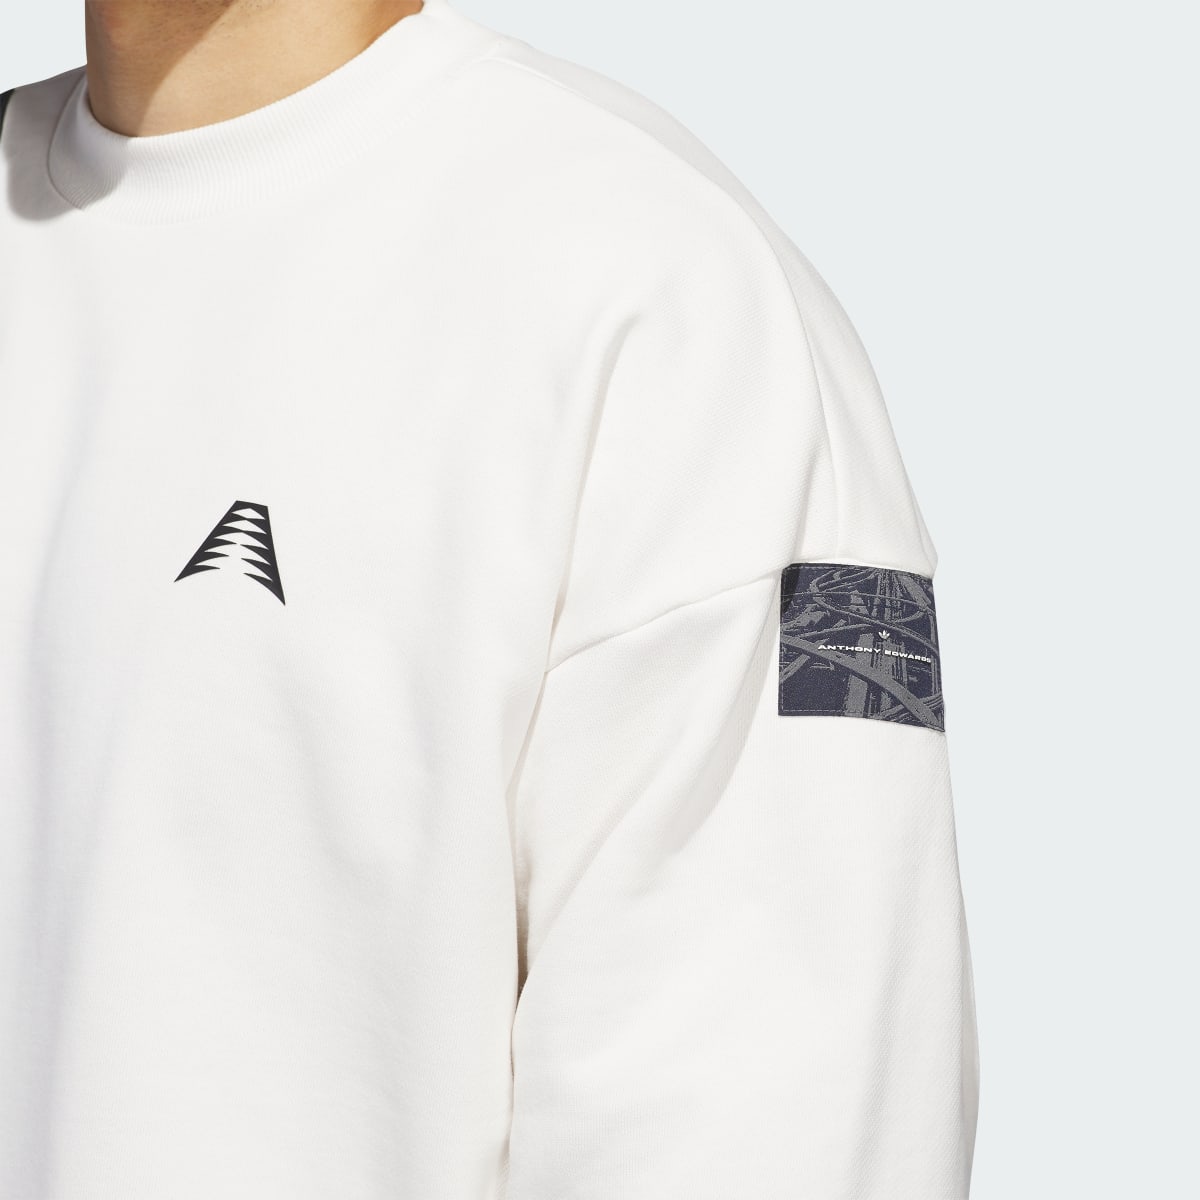 Adidas AE Foundation Crew Sweatshirt. 6